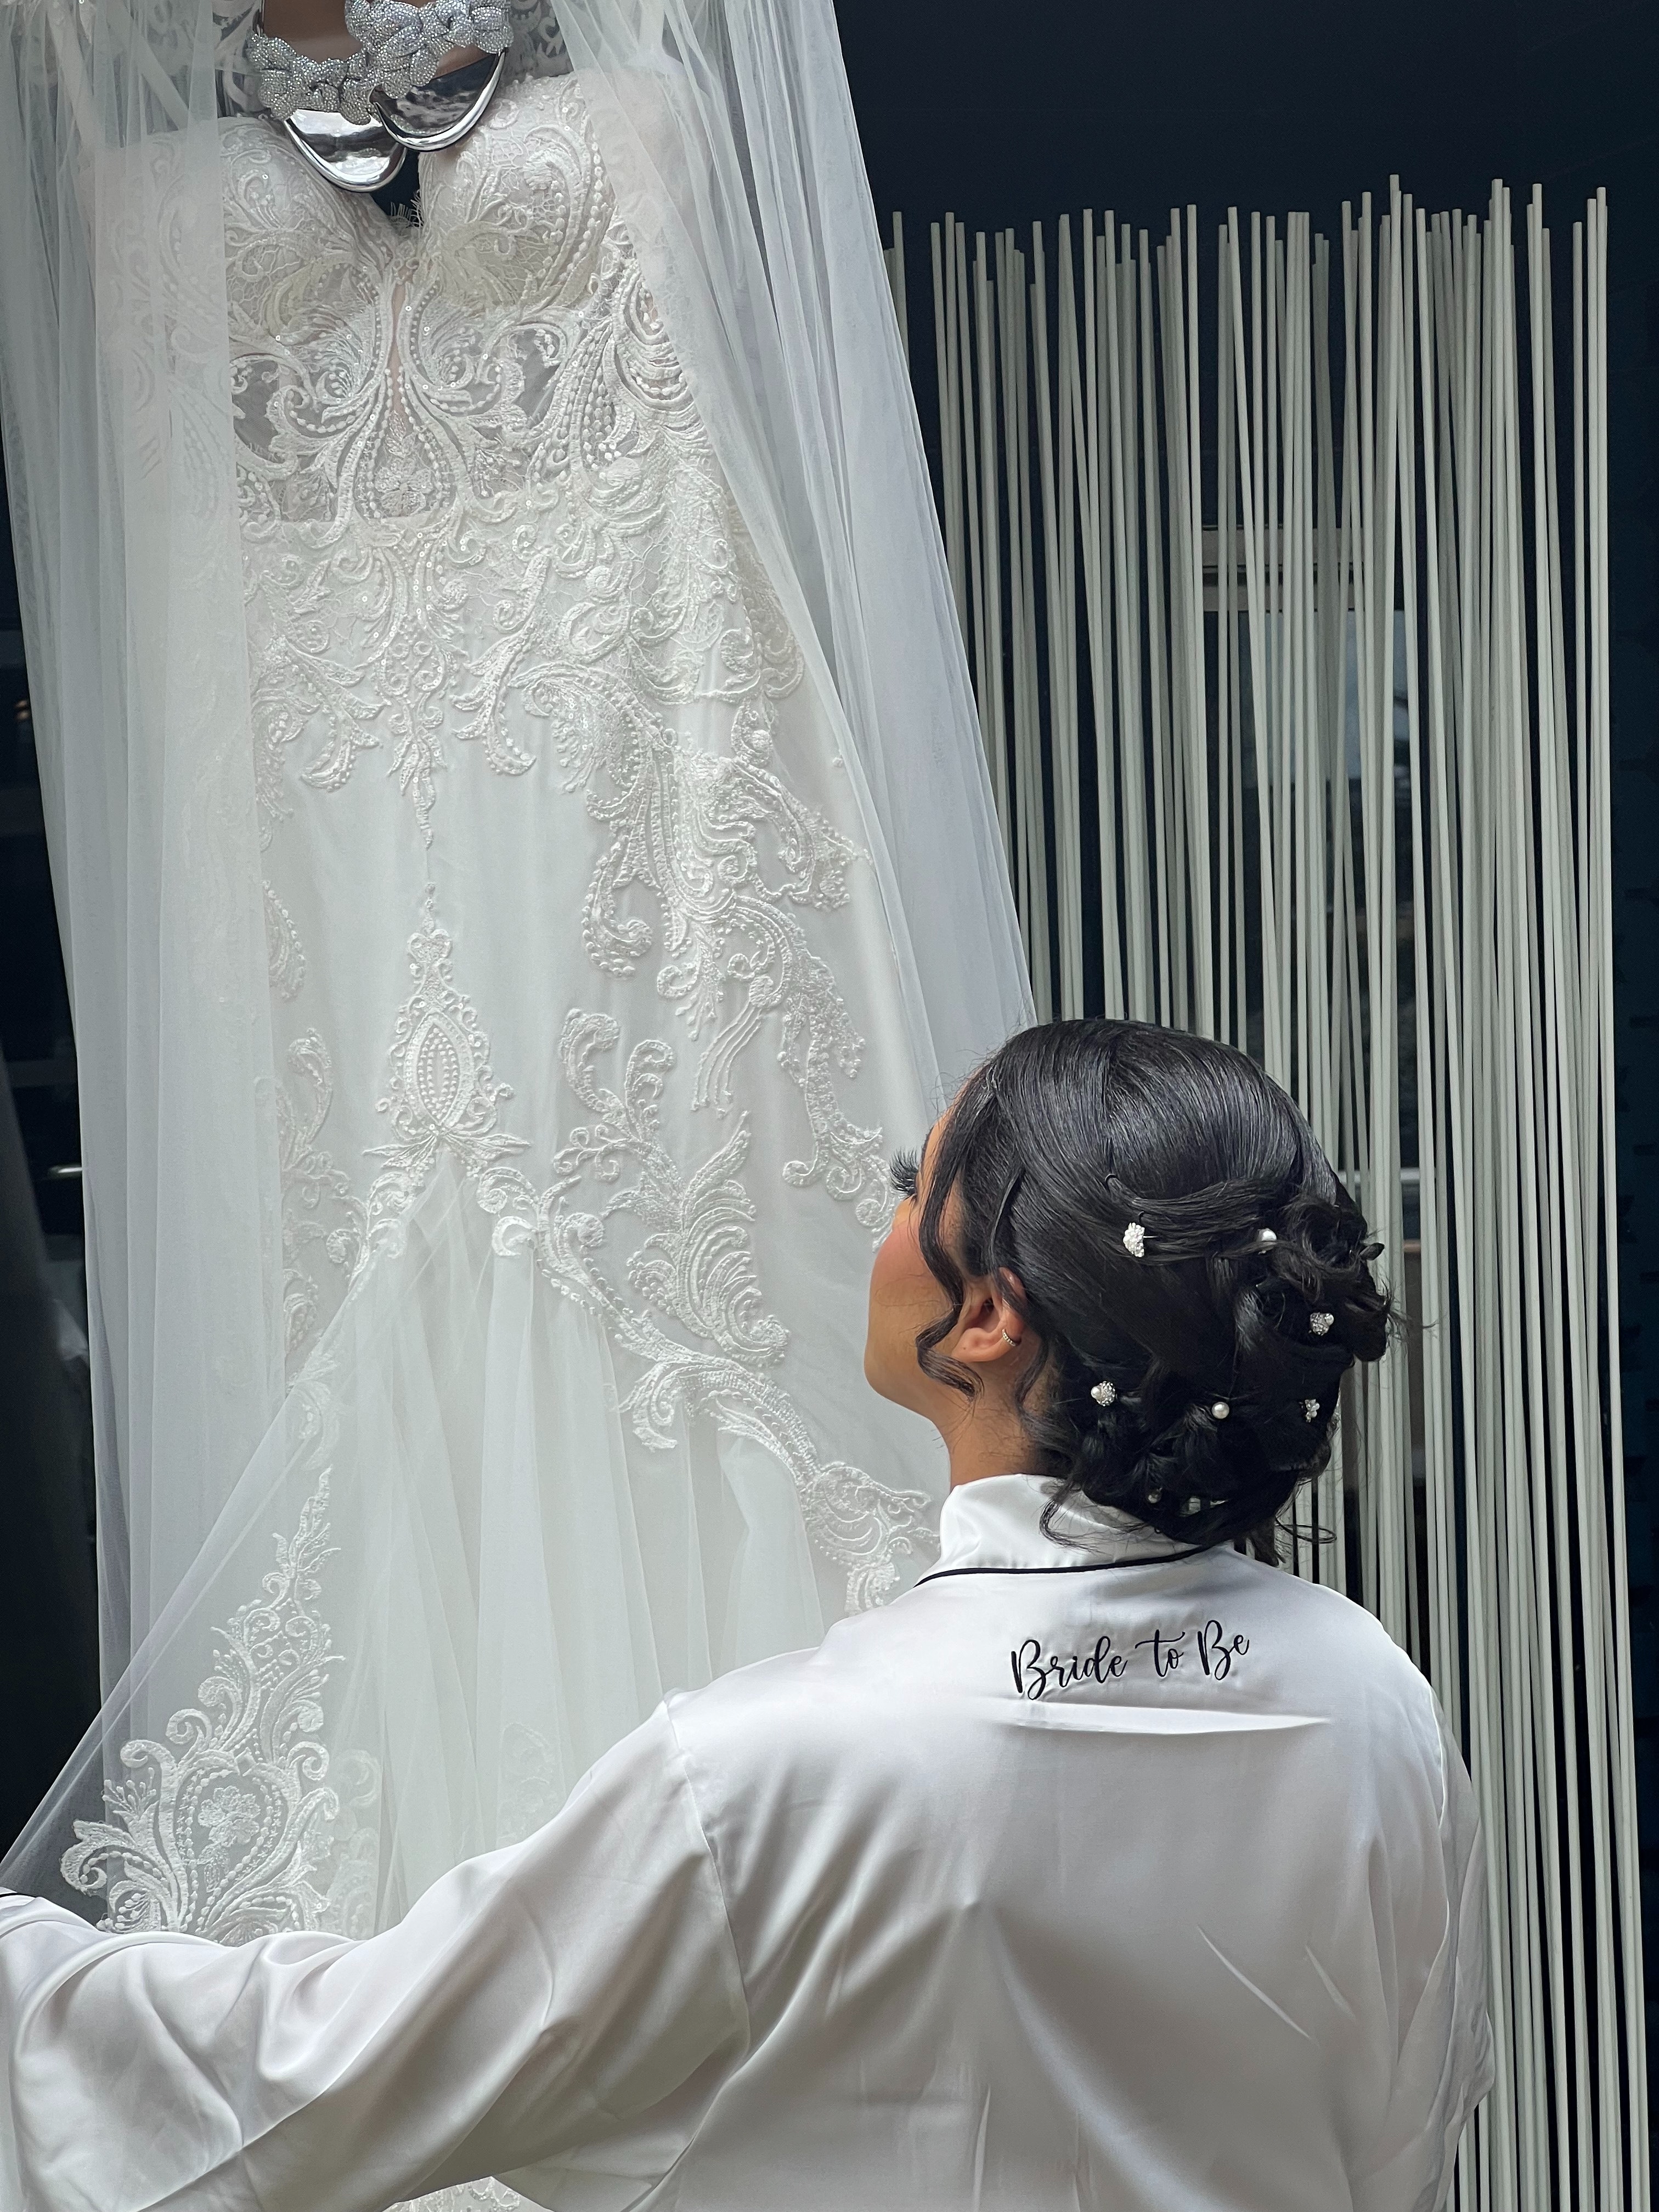 Mujer mirando el vestido de novia | Fuente: Pexels